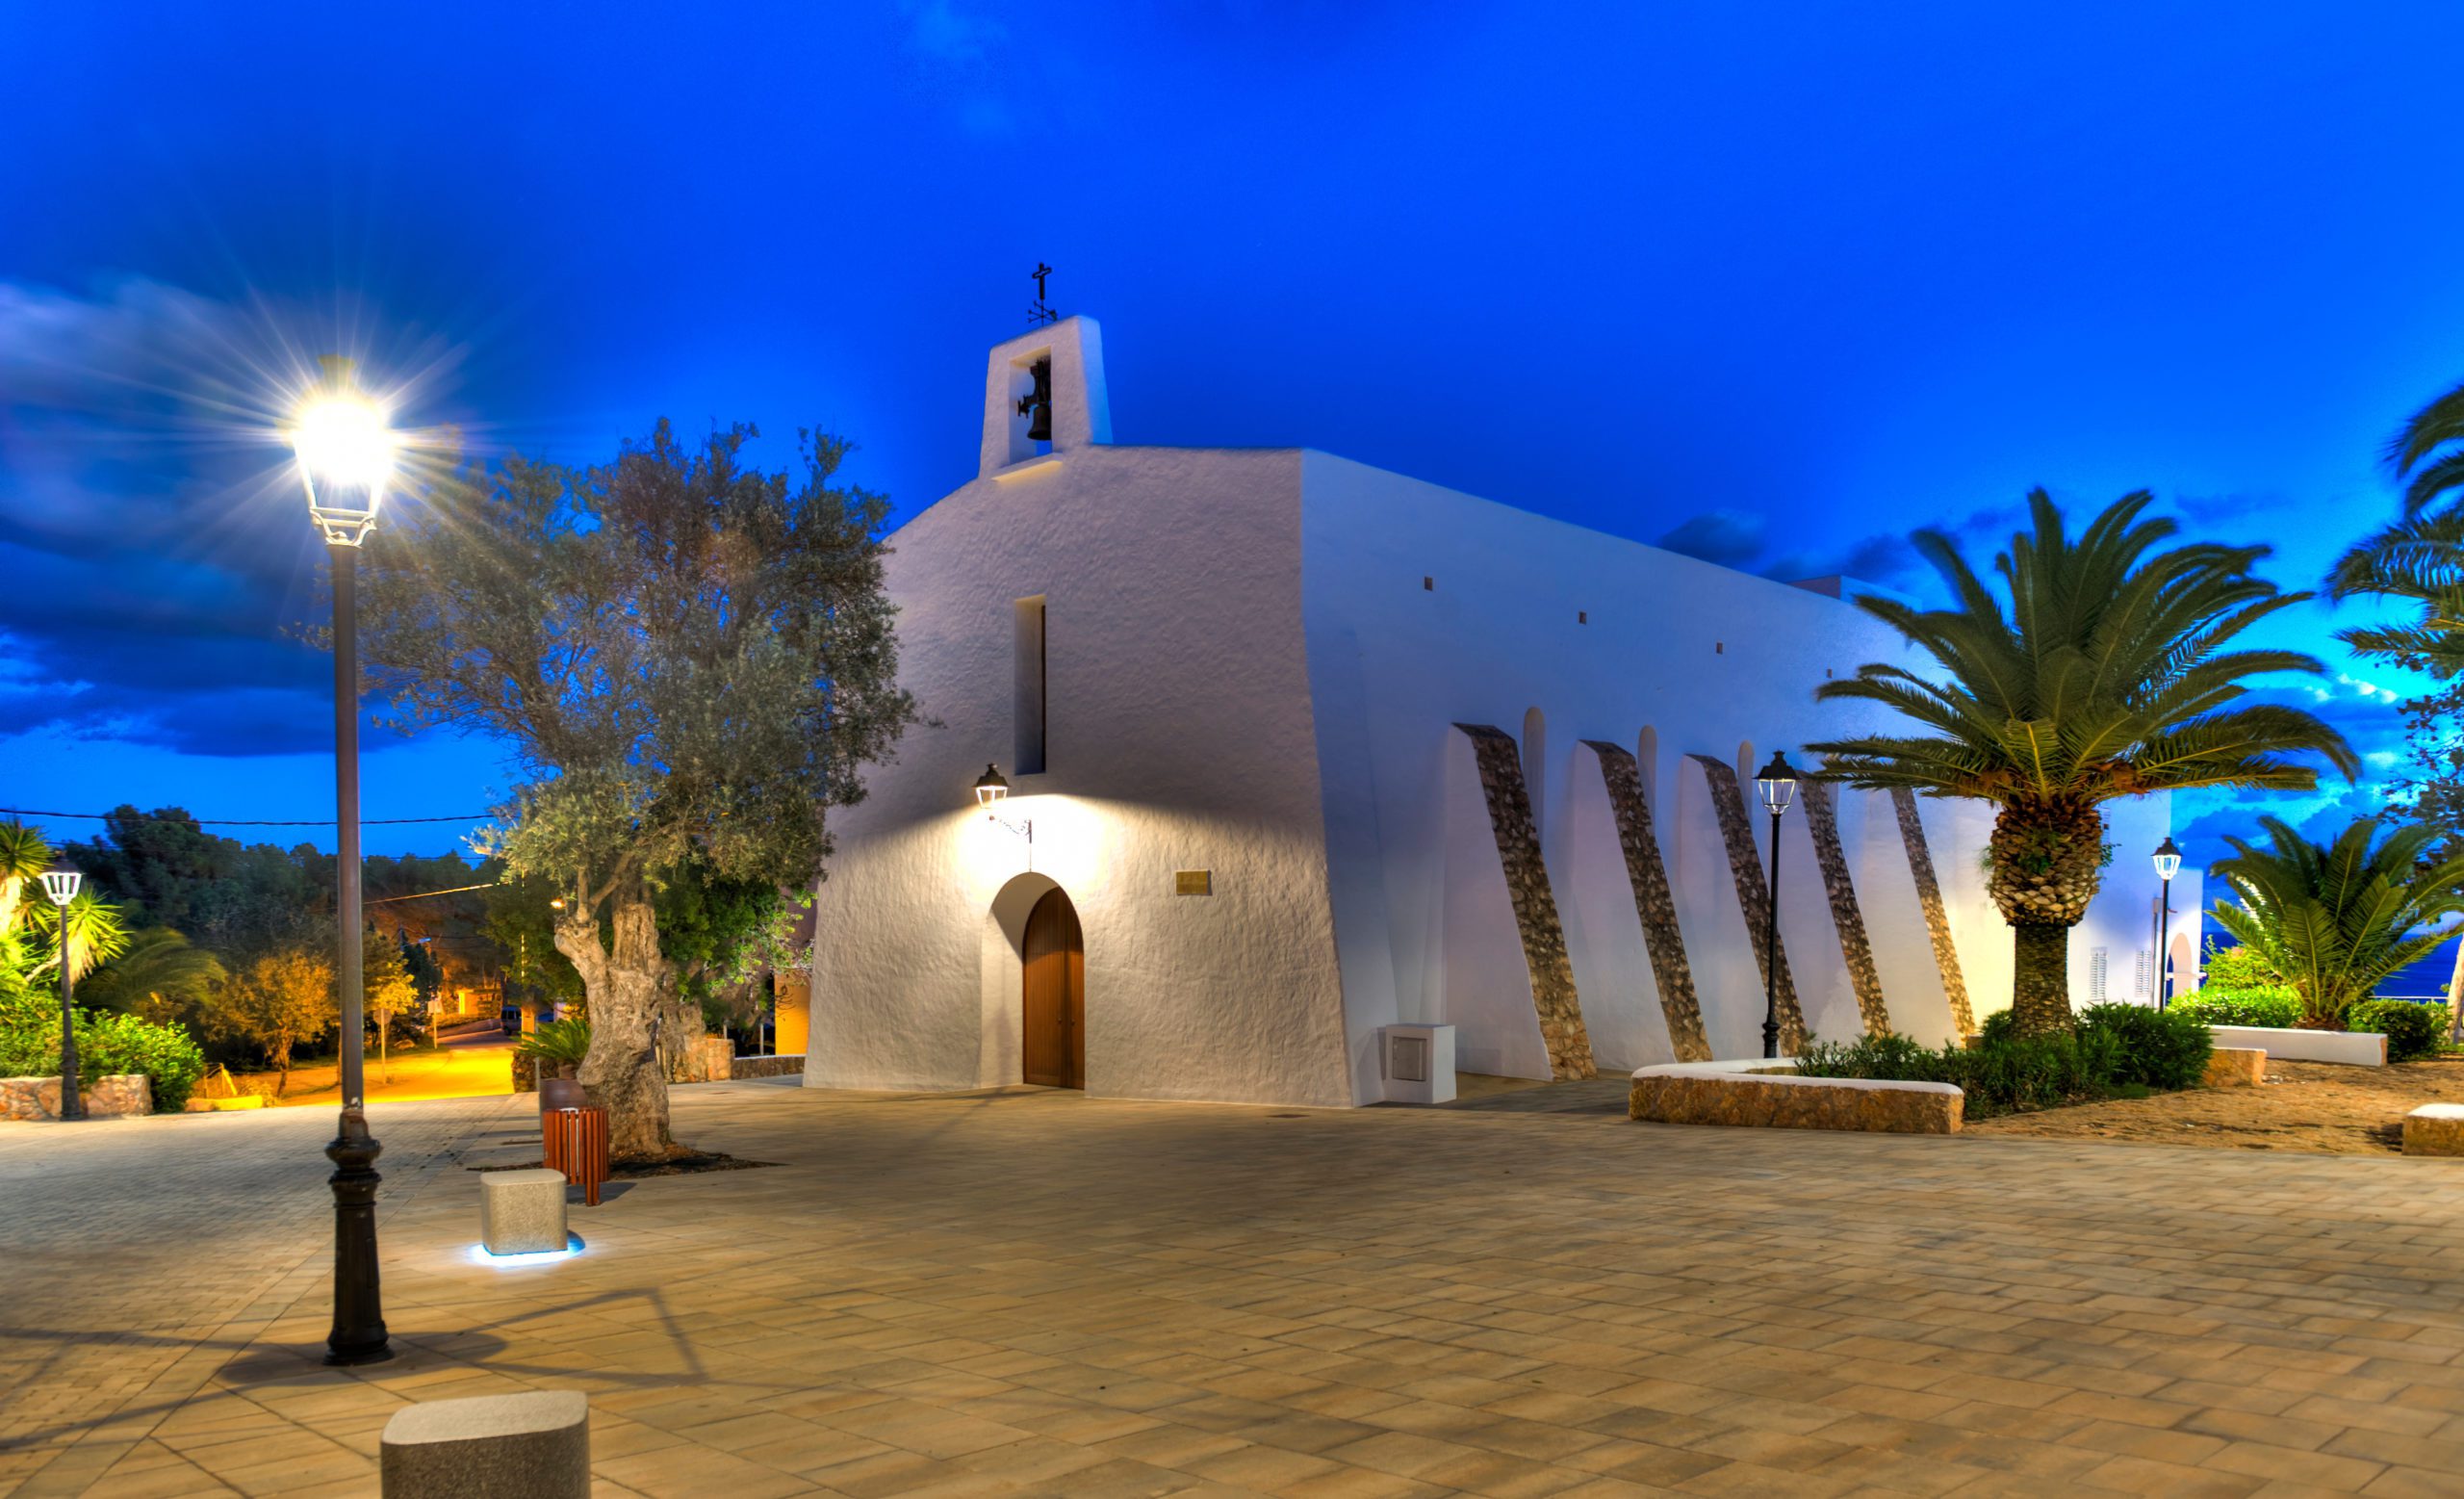 Iglesia del pueblo Es Cubells en Ibiza de noche